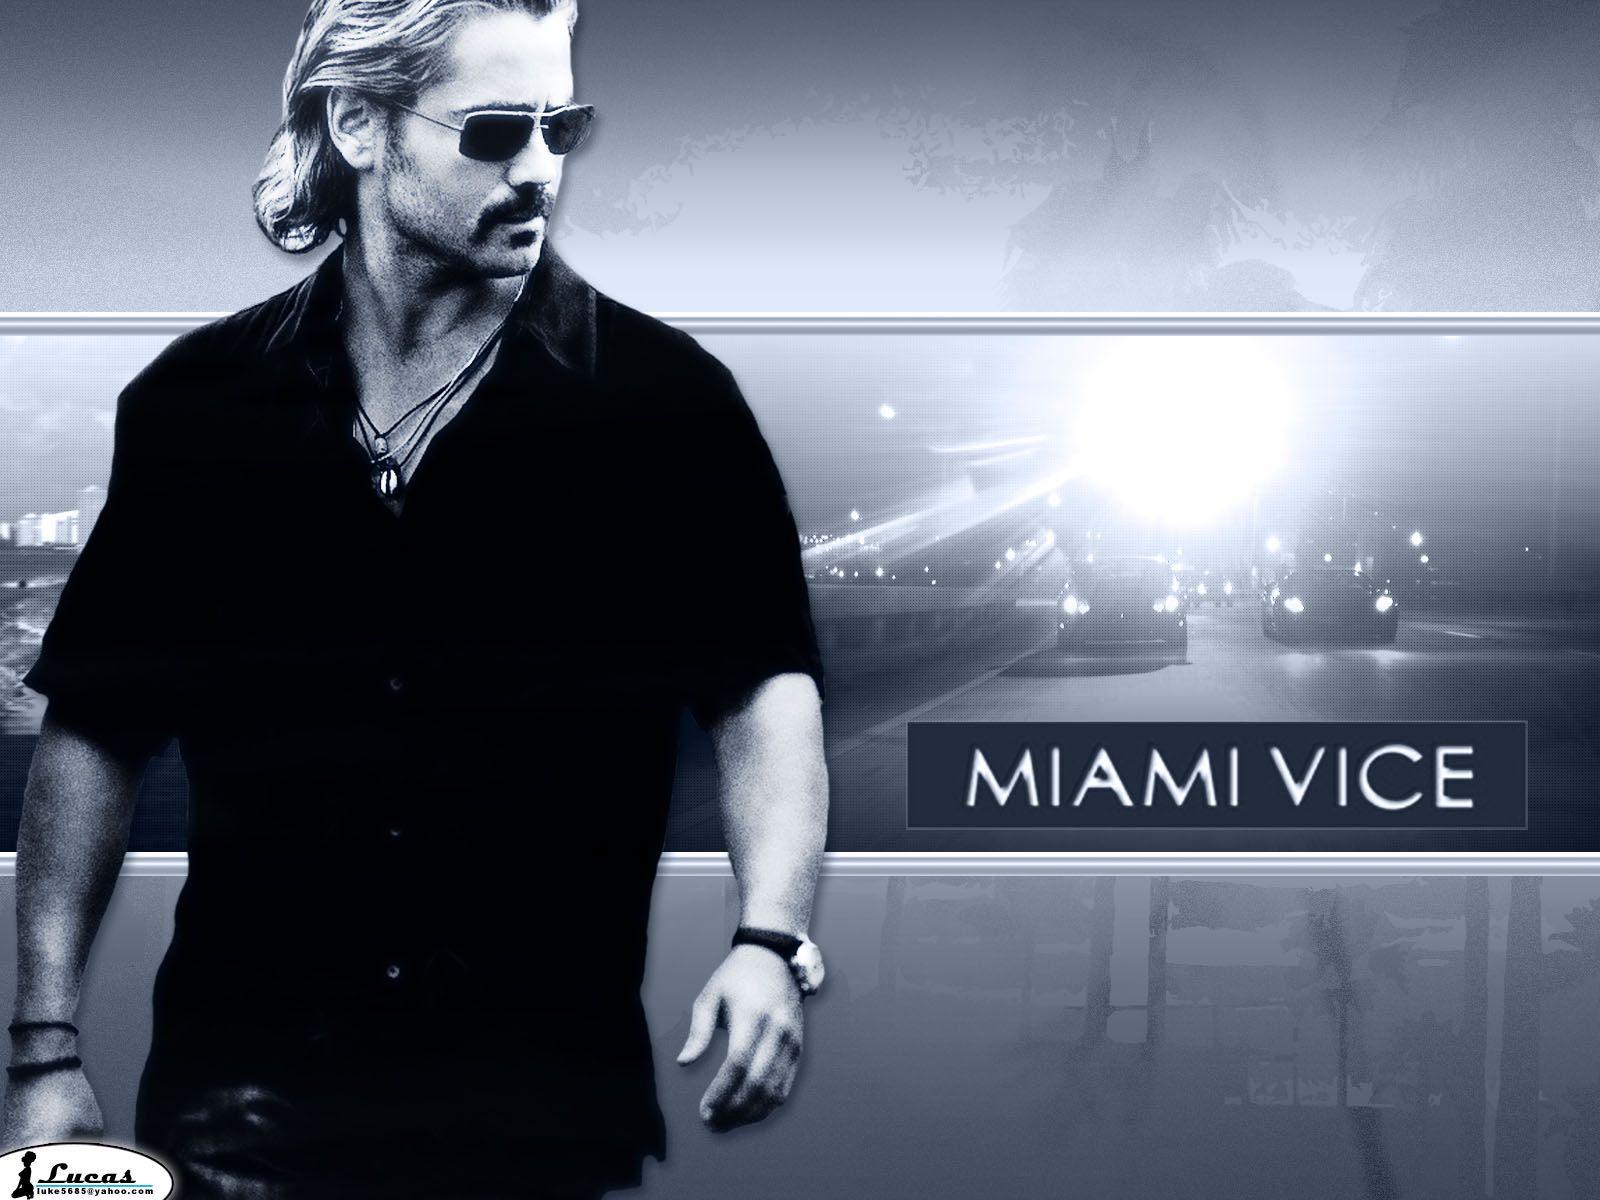 Miami vice 3 wallpaper